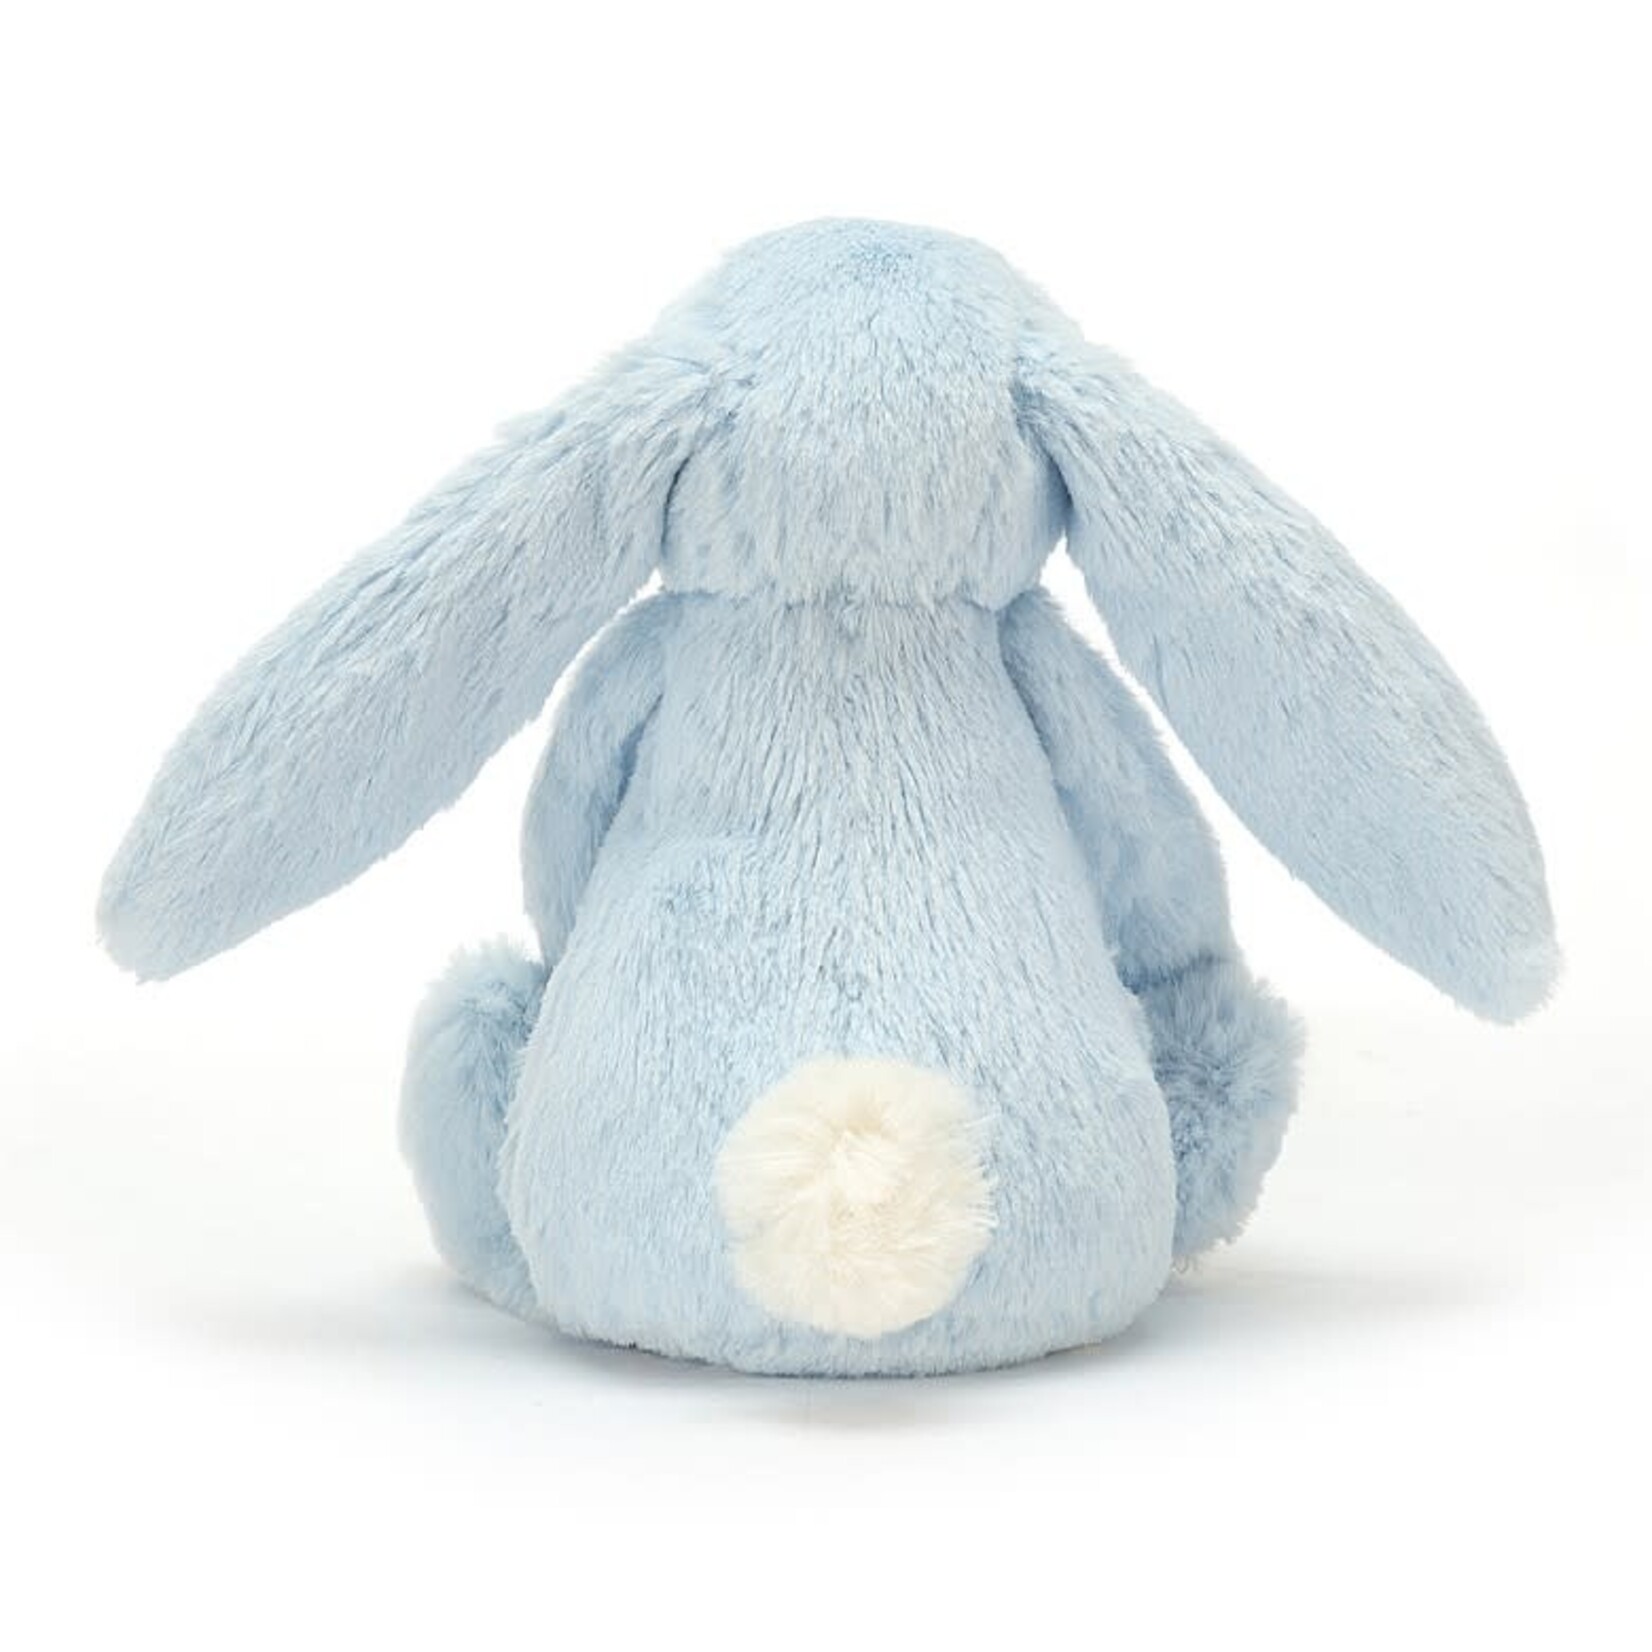 Jellycat Jellycat - Bashful blue bunny rattle